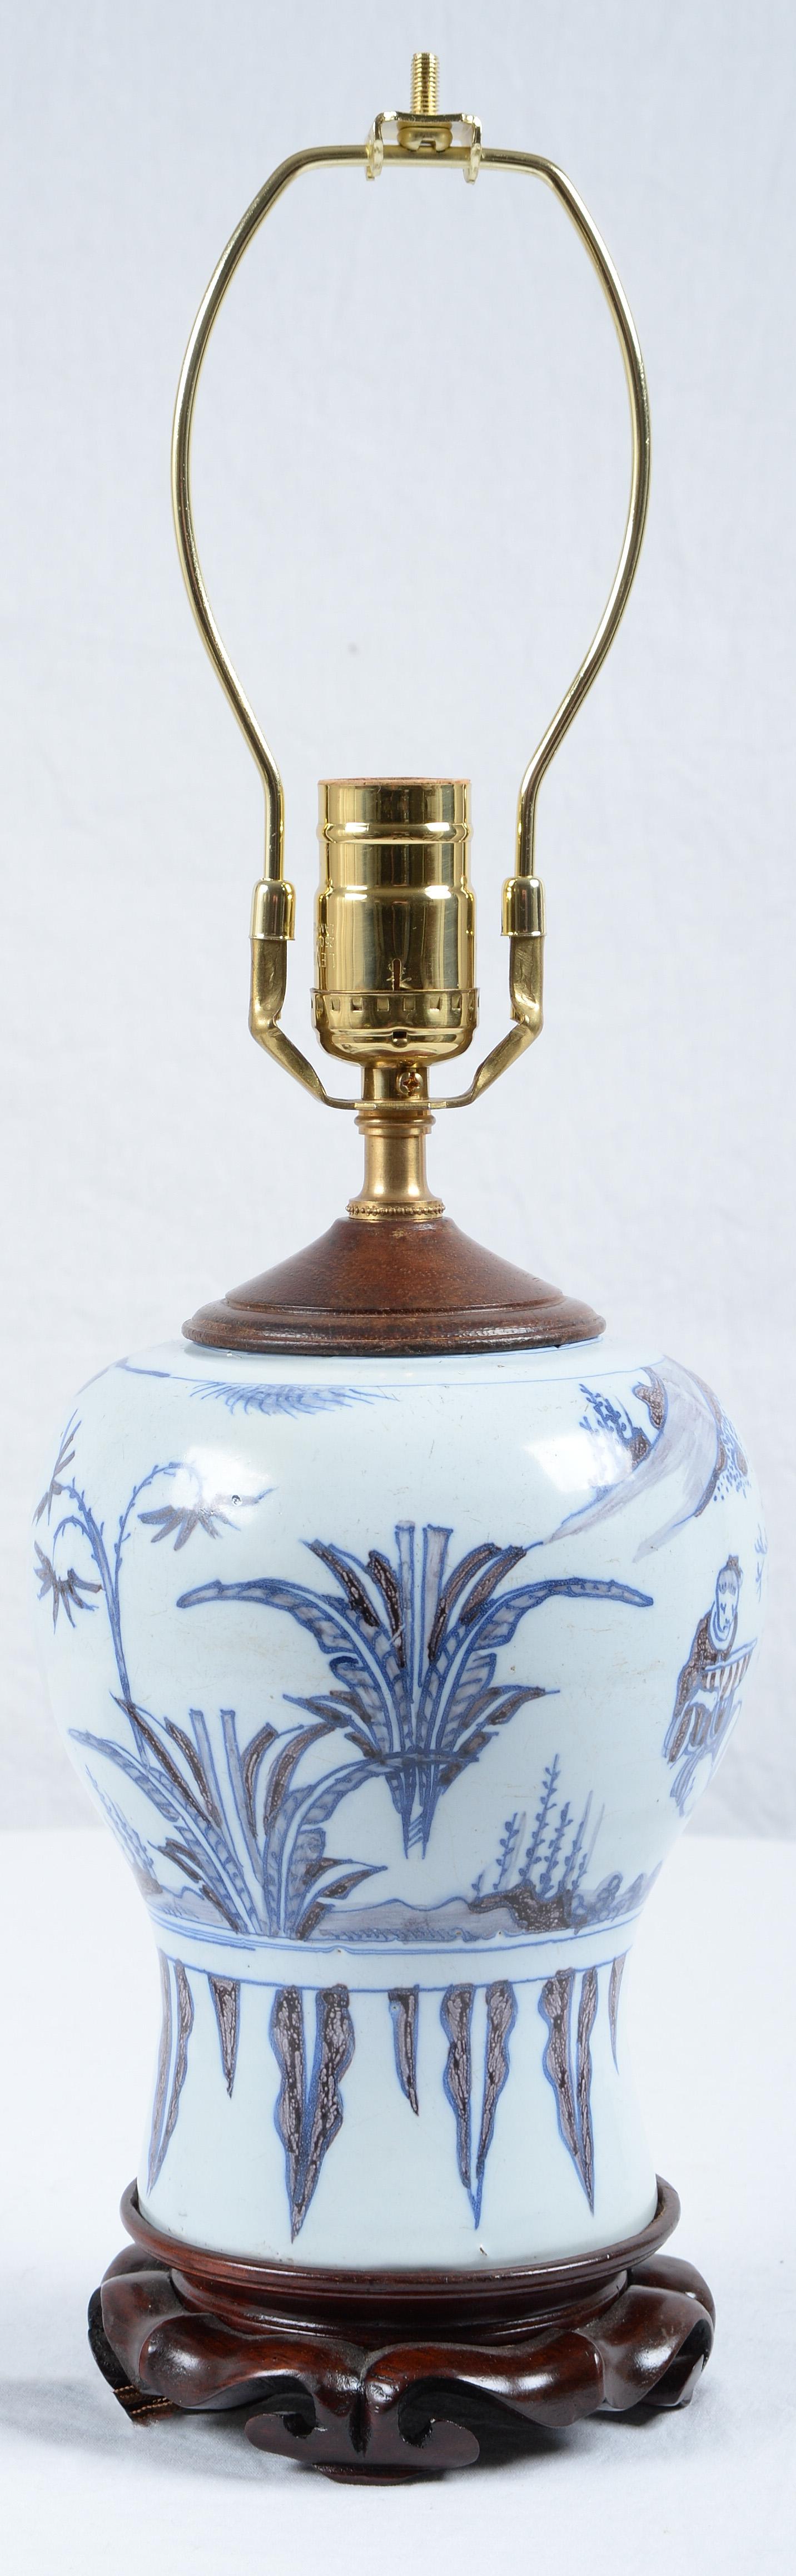 Ende des 17. Jahrhunderts Niederländische Delft Fayence Blau und Weiß Chinoiserie Baluster Vase als Lampe montiert und neu elektrifiziert.
Dekoriert in Anlehnung an eine chinesische Ming-Vase mit einem Salbei, Felsen und Pflanzen, montiert auf einem